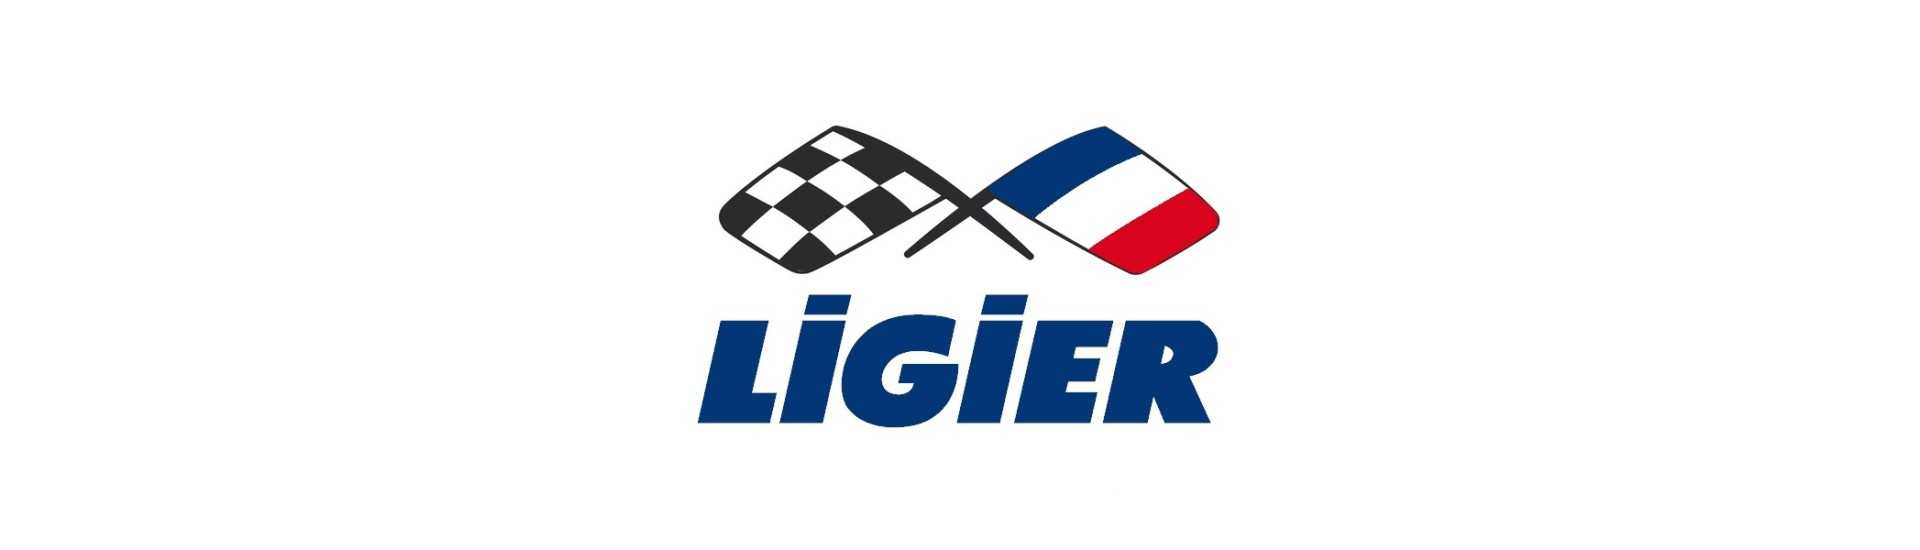 Radiator motor la cel mai bun preț pentru o mașină fără permis Ligier